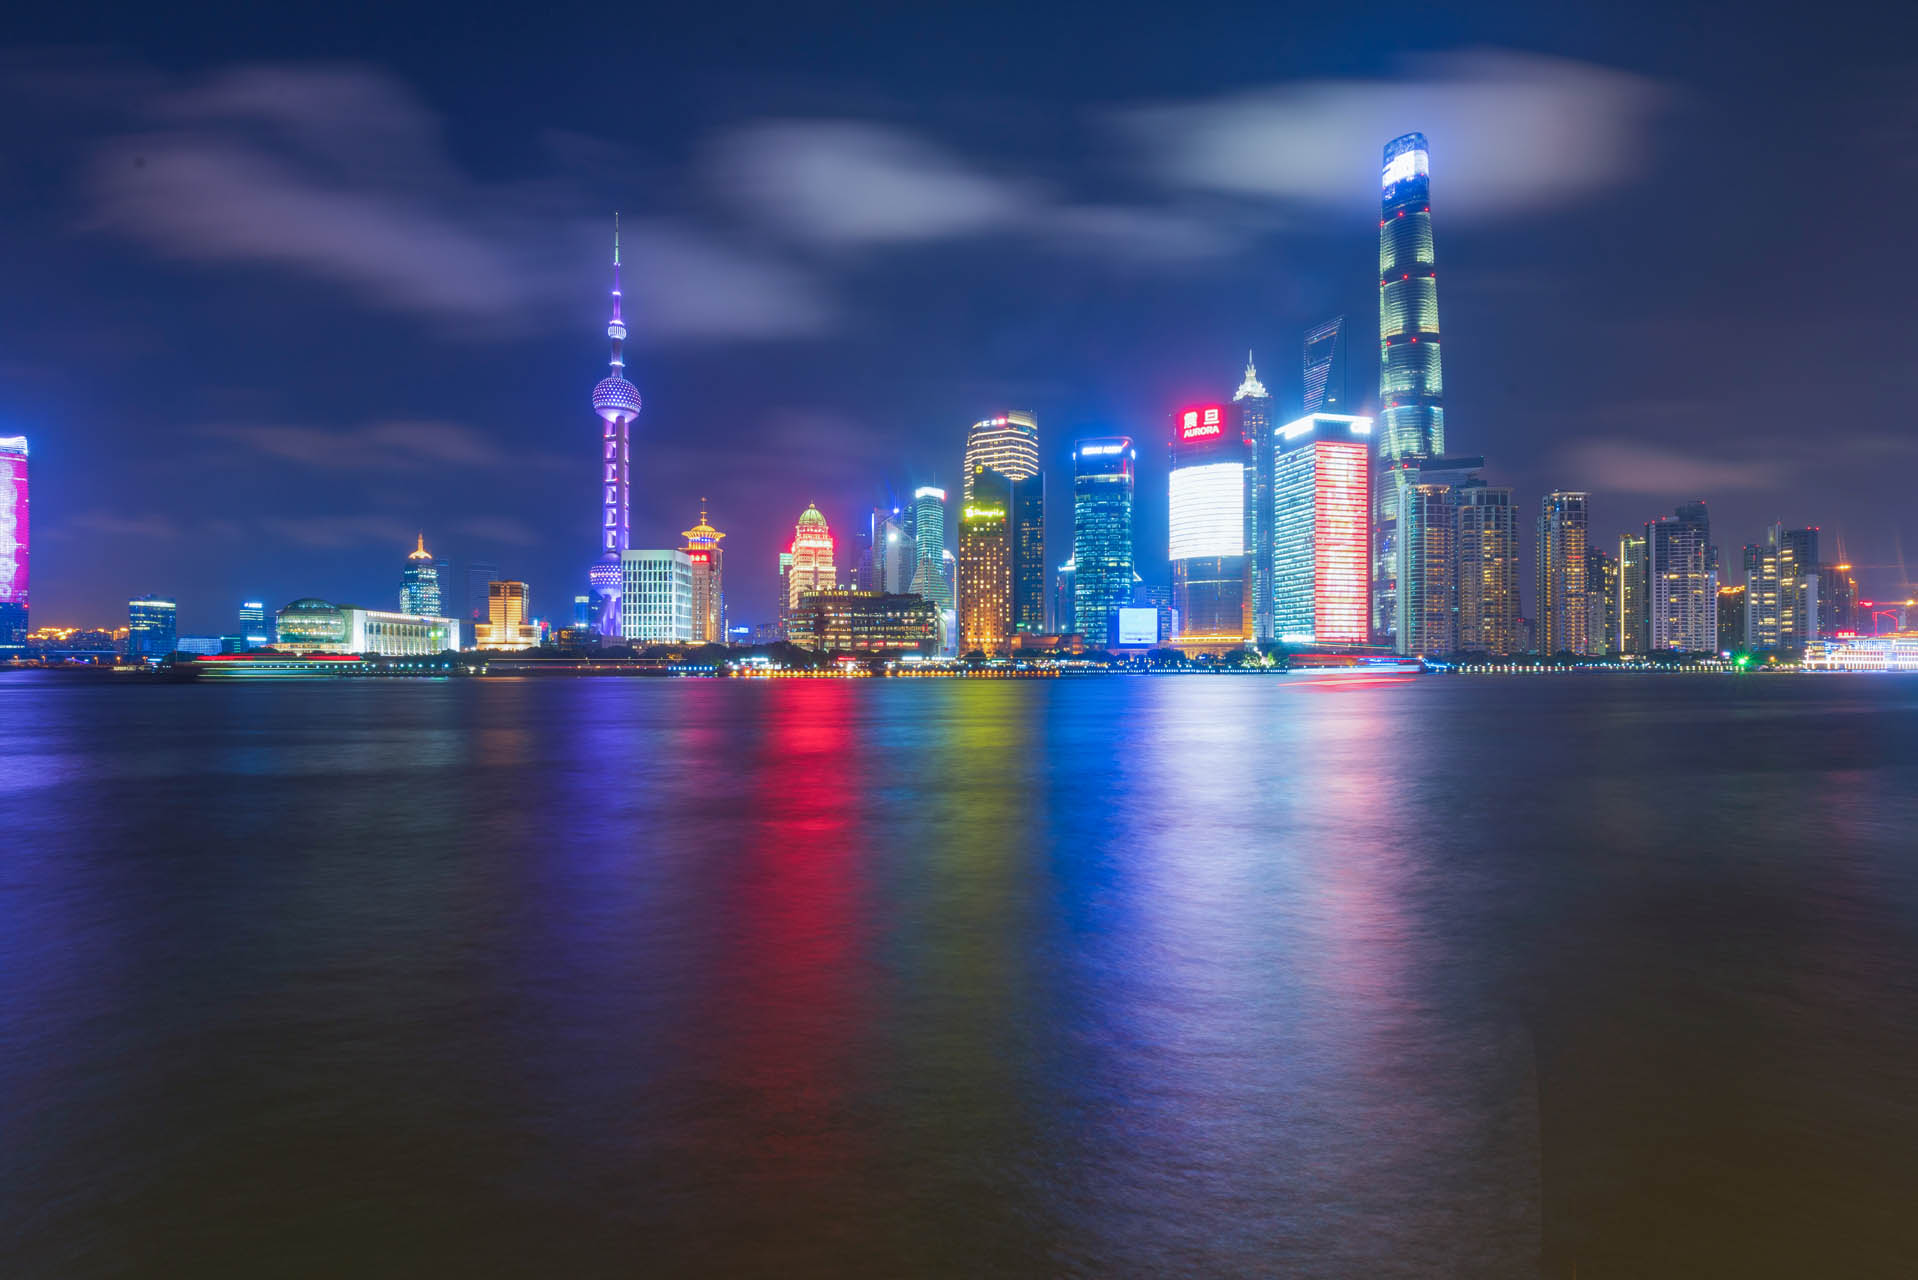 上海陆家嘴璀璨夜景,中国最美城市天际线名不